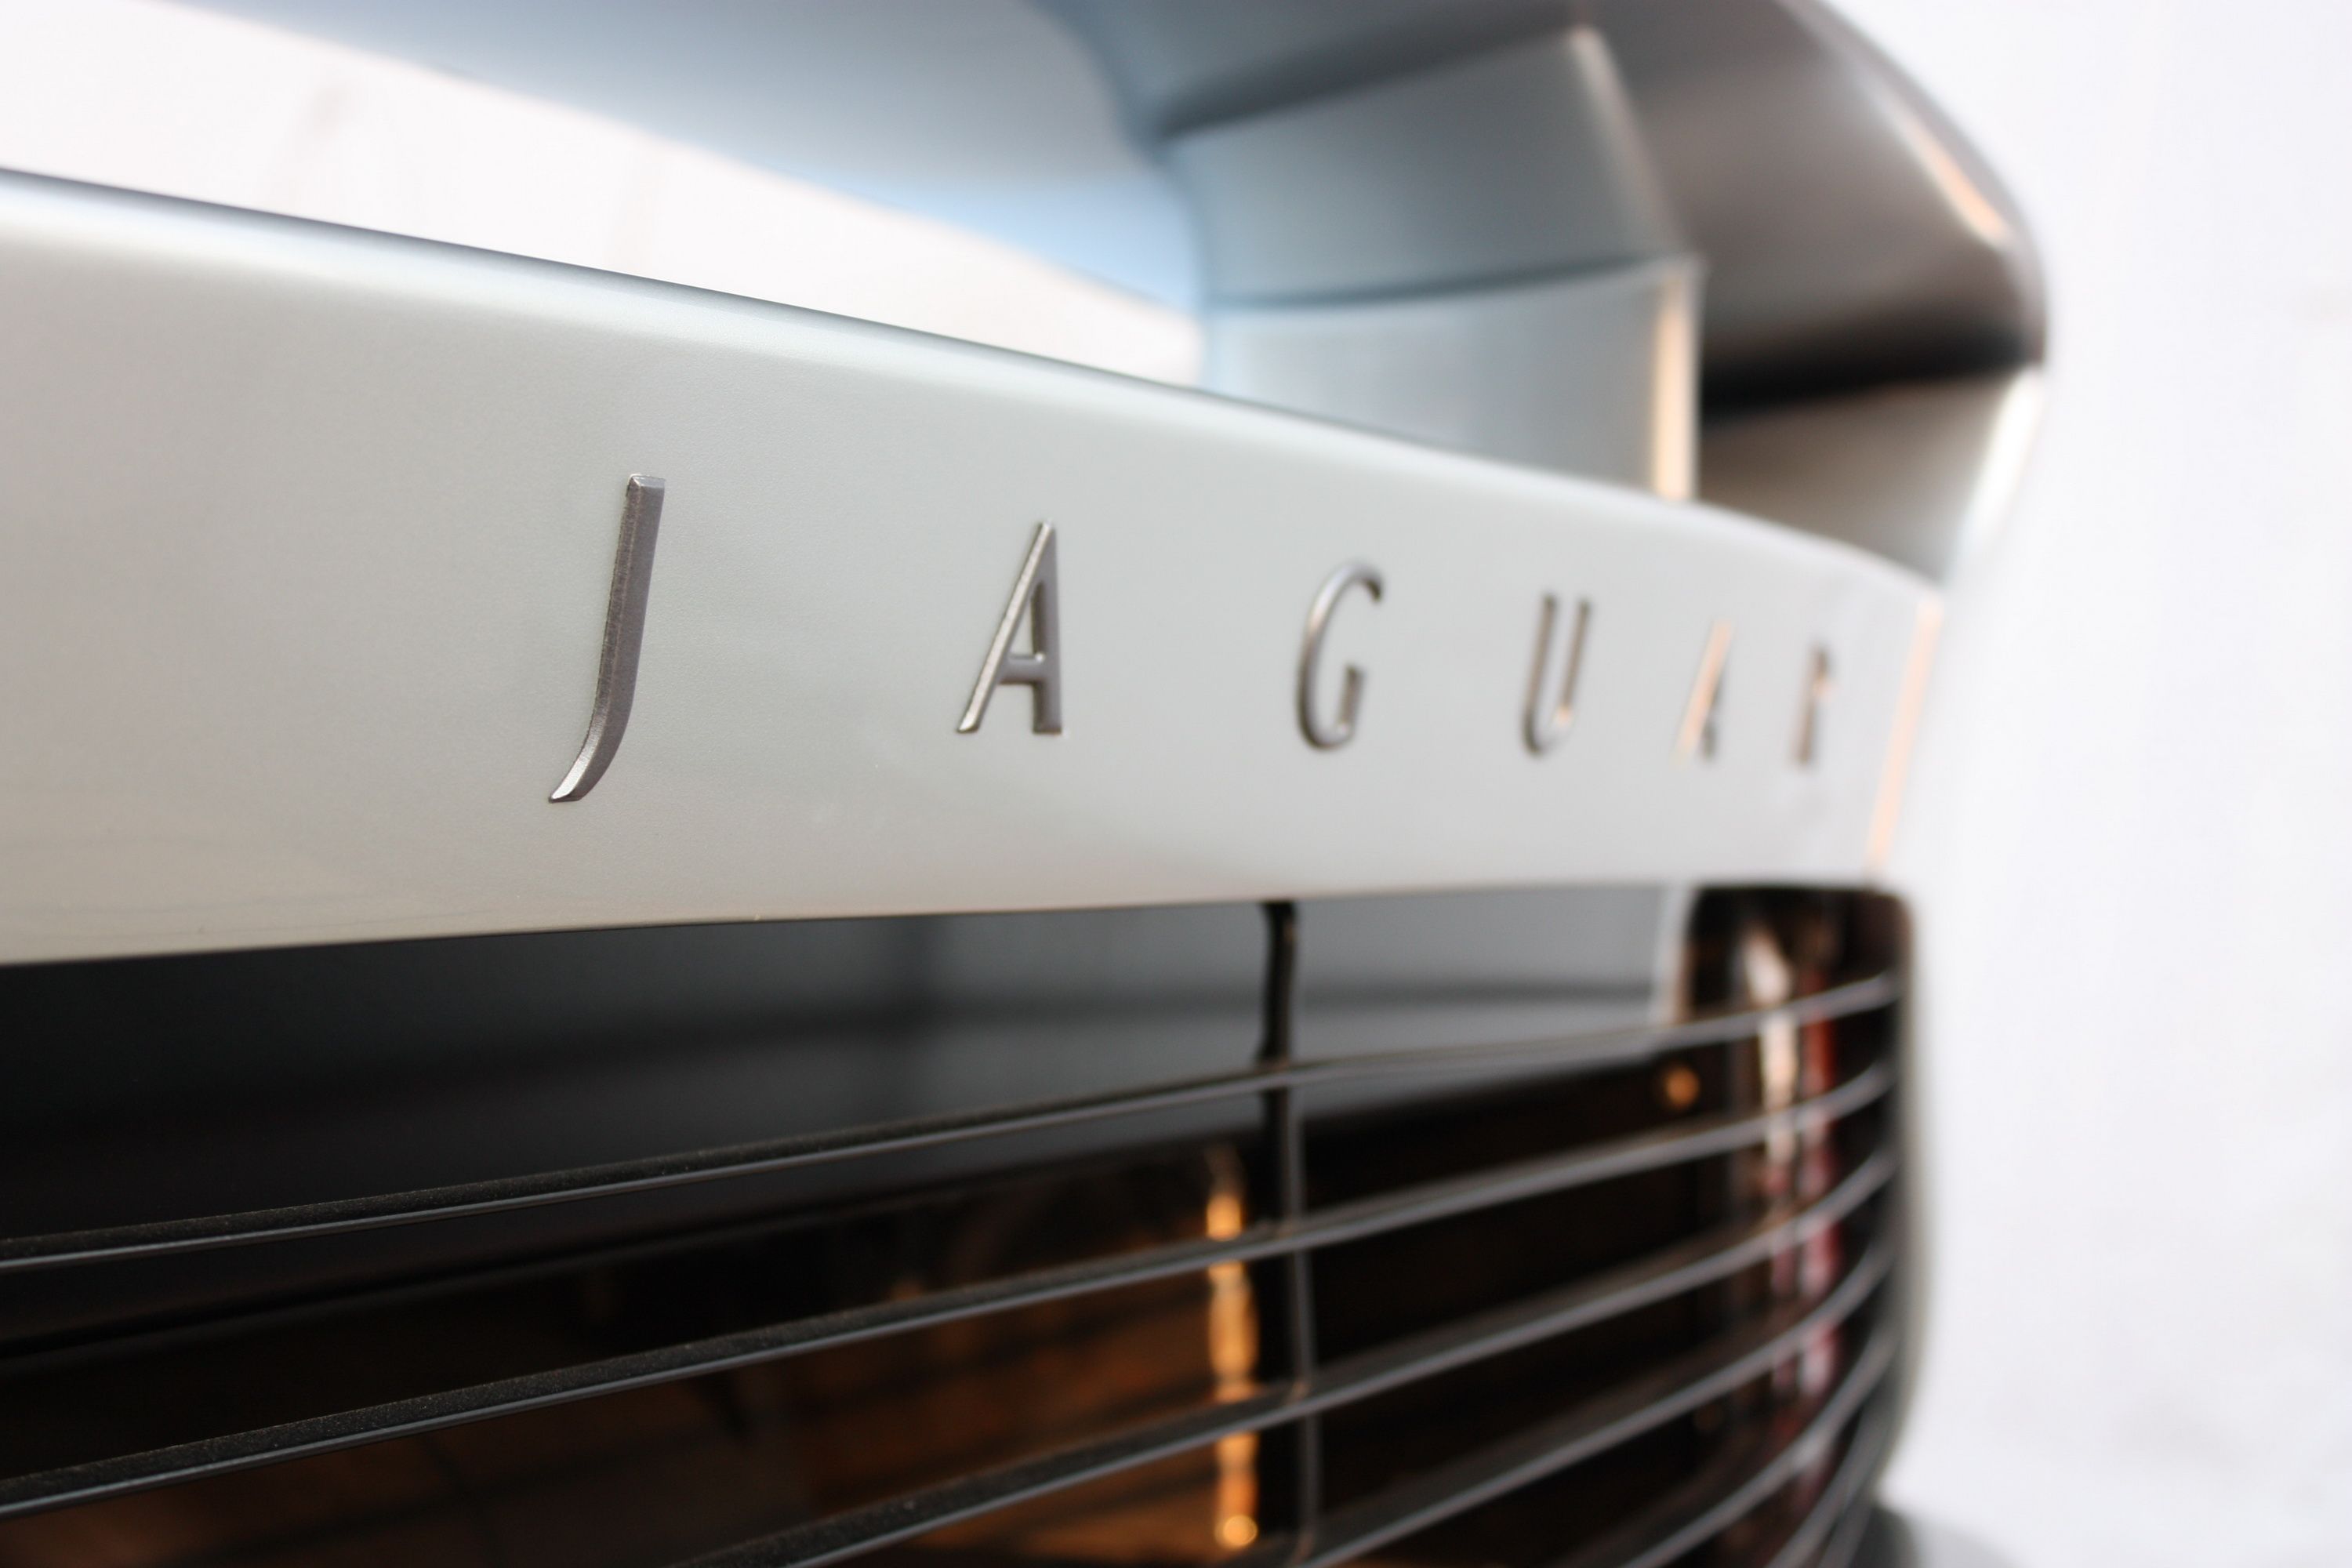 1992 - 1994 Jaguar XJ 220